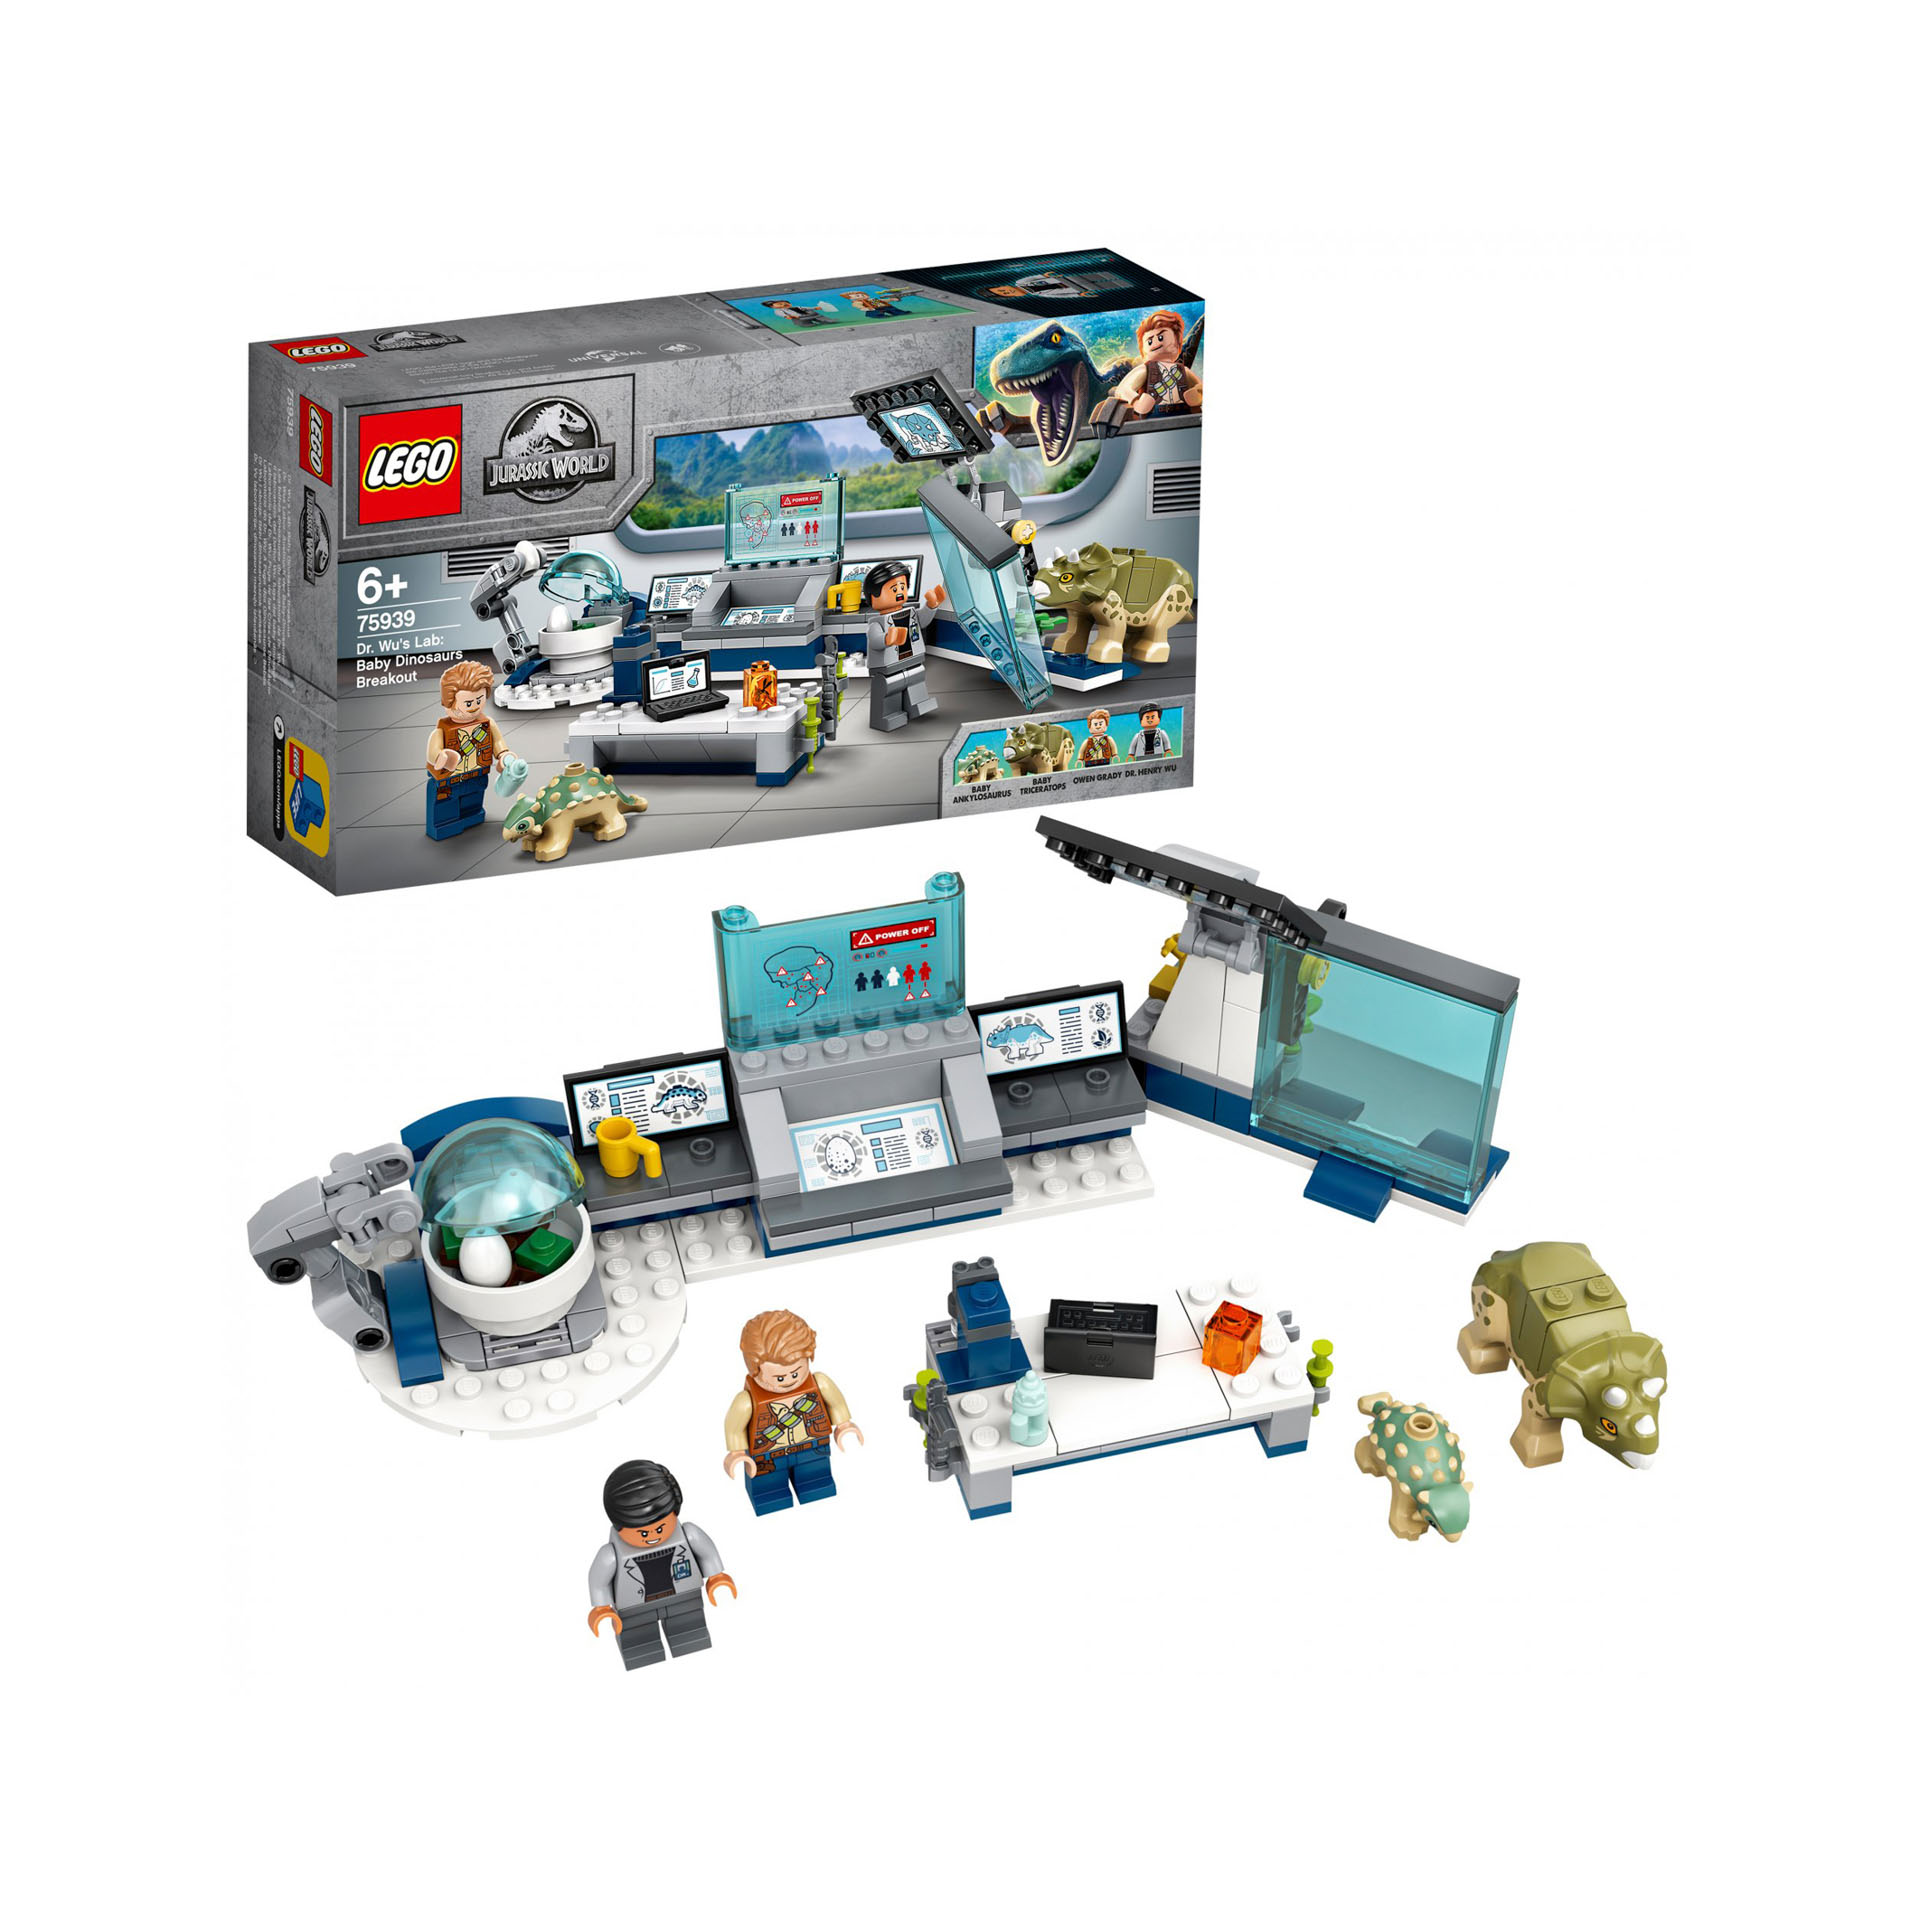 Lego Il Laboratorio Del Dottor Wu: Fuga Dei Baby Dinosauri 75939, , large